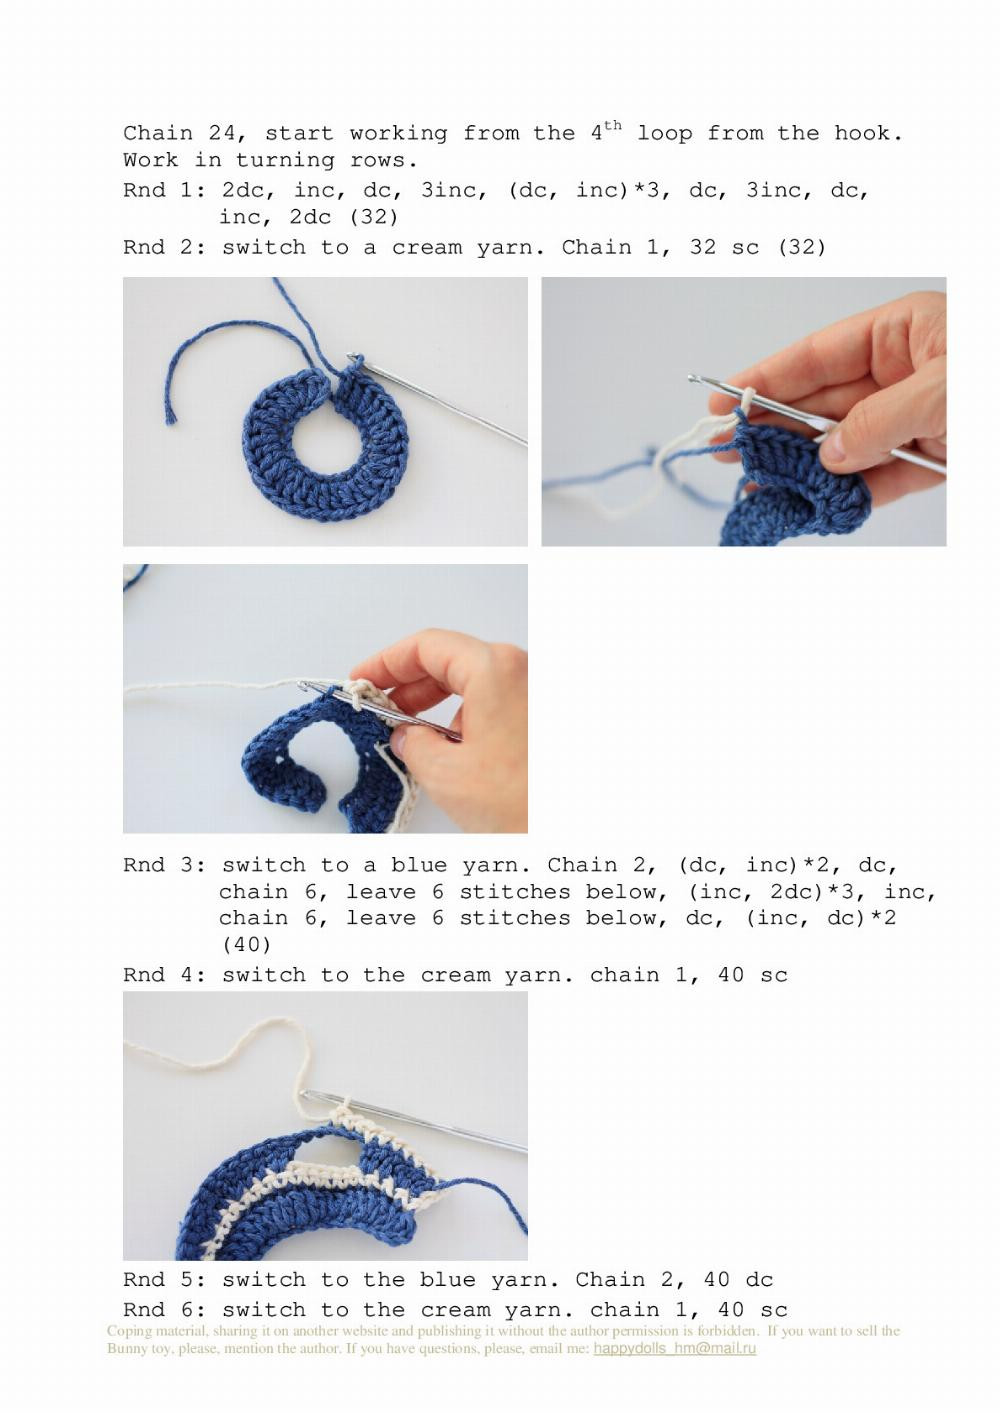 Bunny Mila crochet pattern